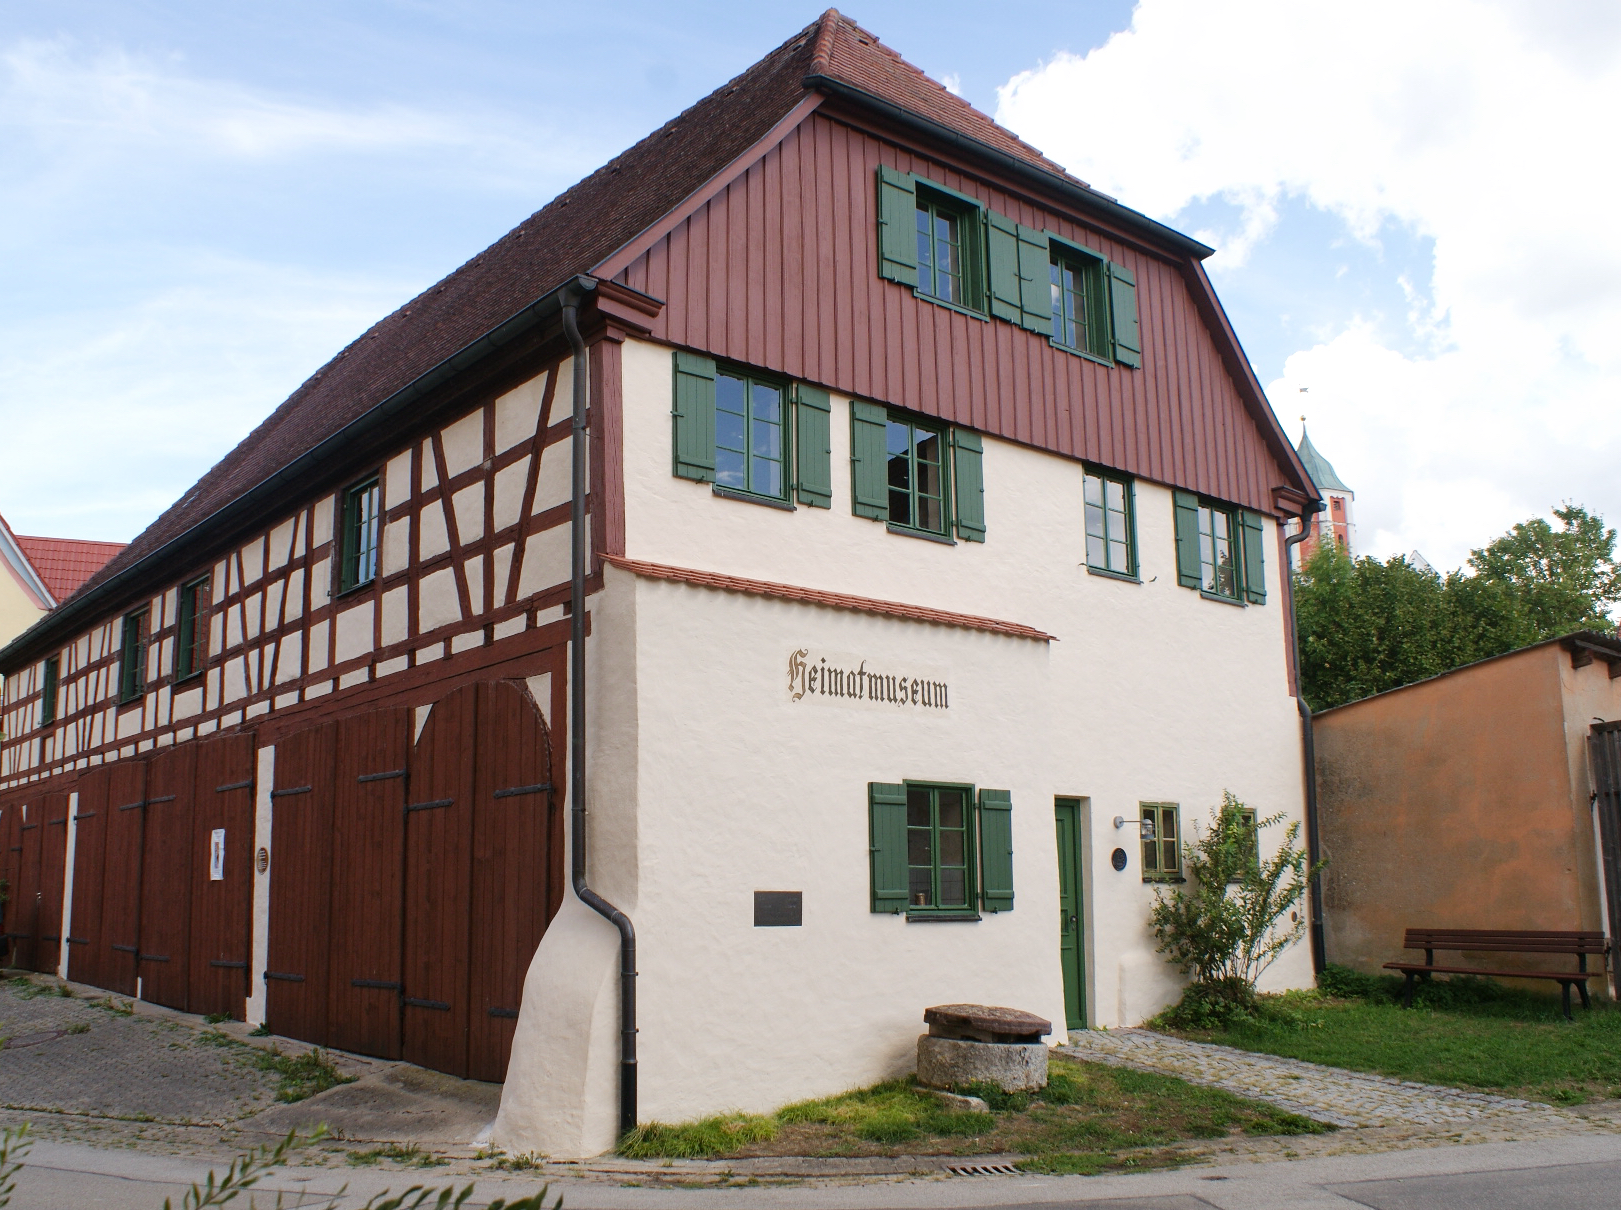                                                     Trachten- und Heimatmuseum                                    